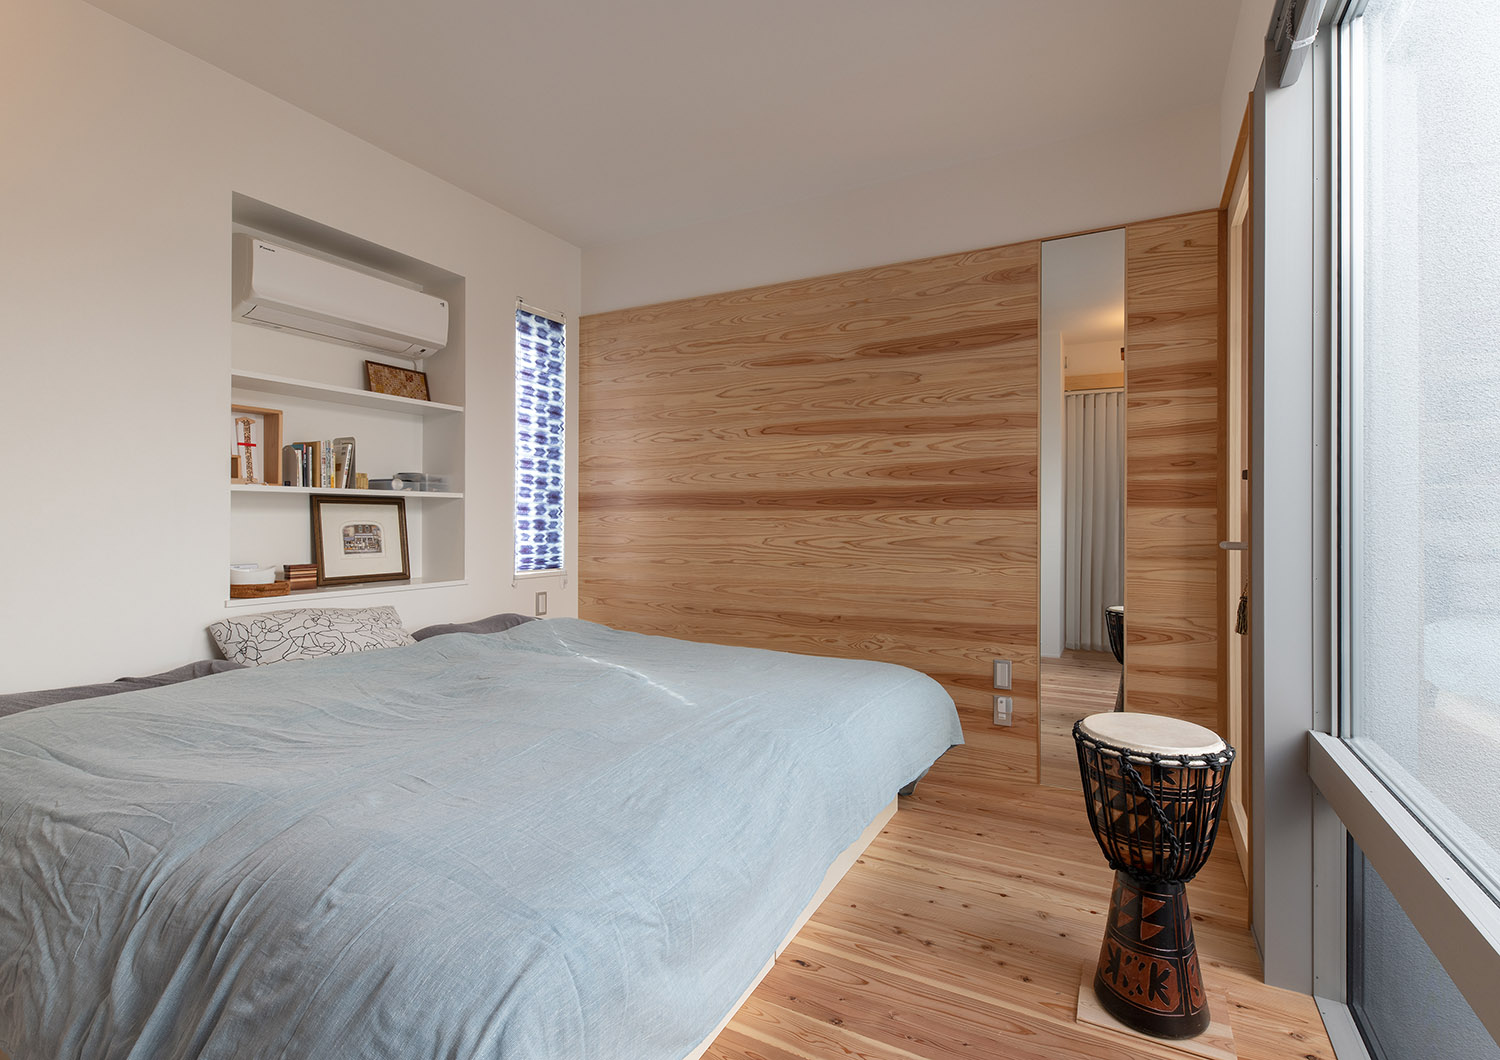 床と壁に無垢材を使用したナチュラルな寝室・デザイン住宅